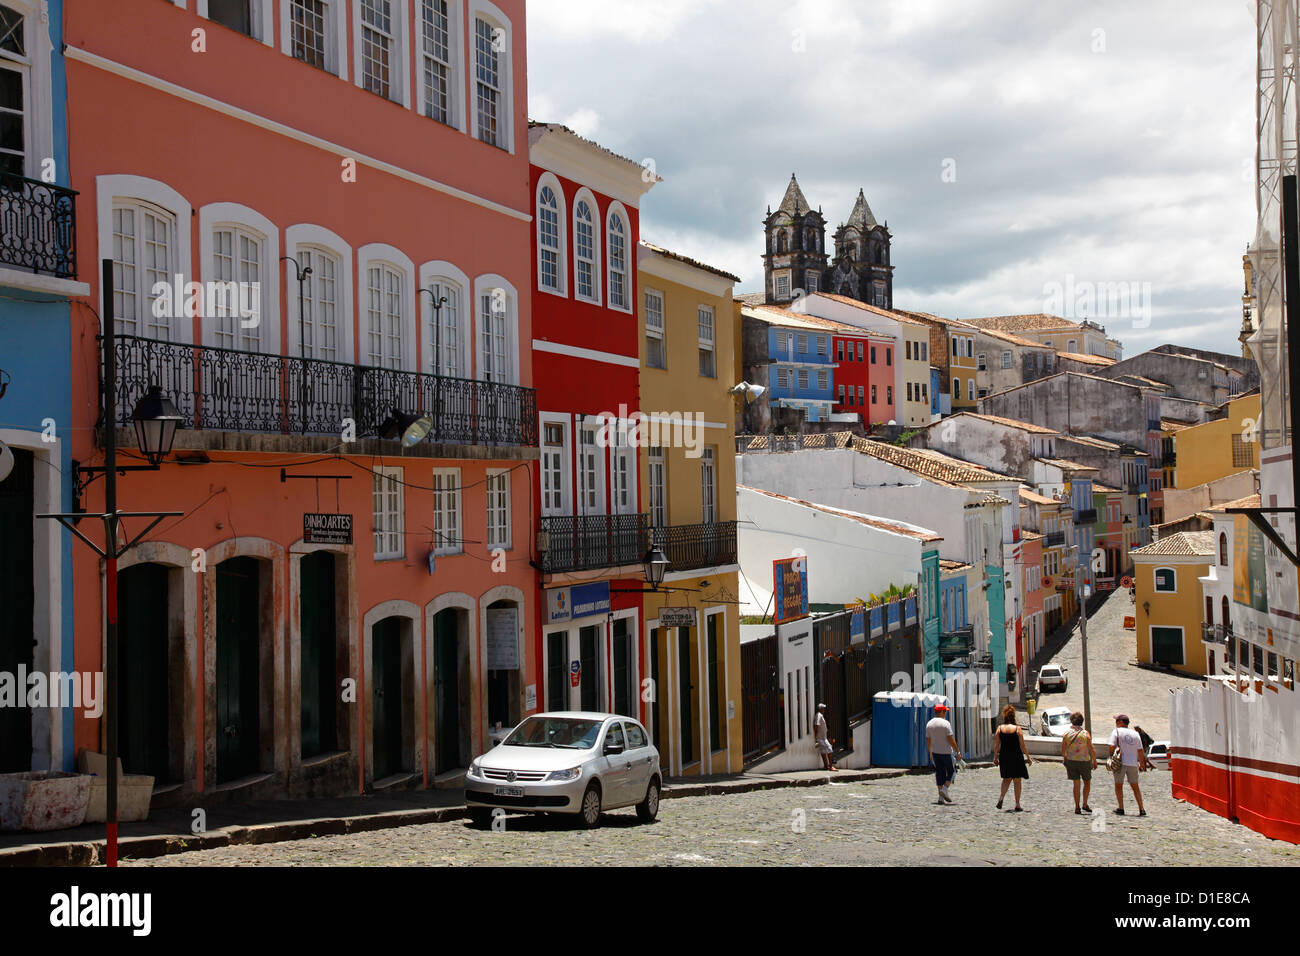 Gepflasterten Straßen und koloniale Architektur, Largo de Pelourinho, Salvador, Bahia, Brasilien, Südamerika Stockfoto